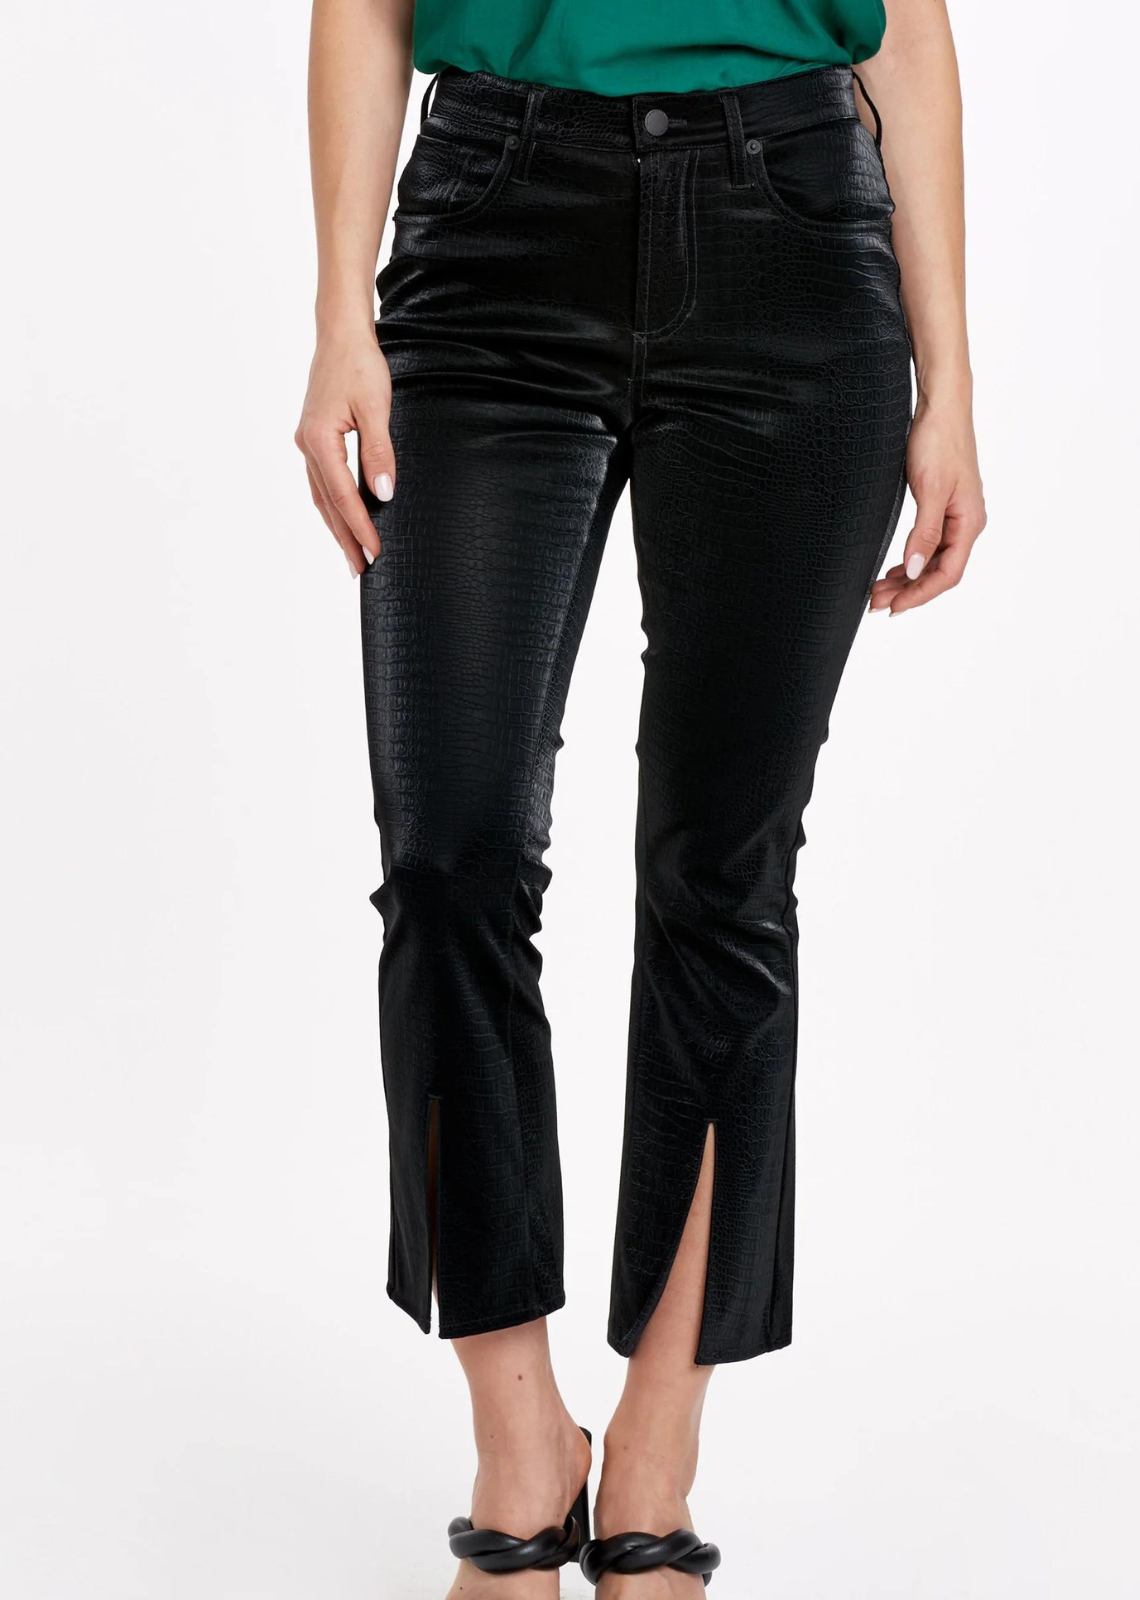 TULO Fashion, Gianna Petite Pants - Black